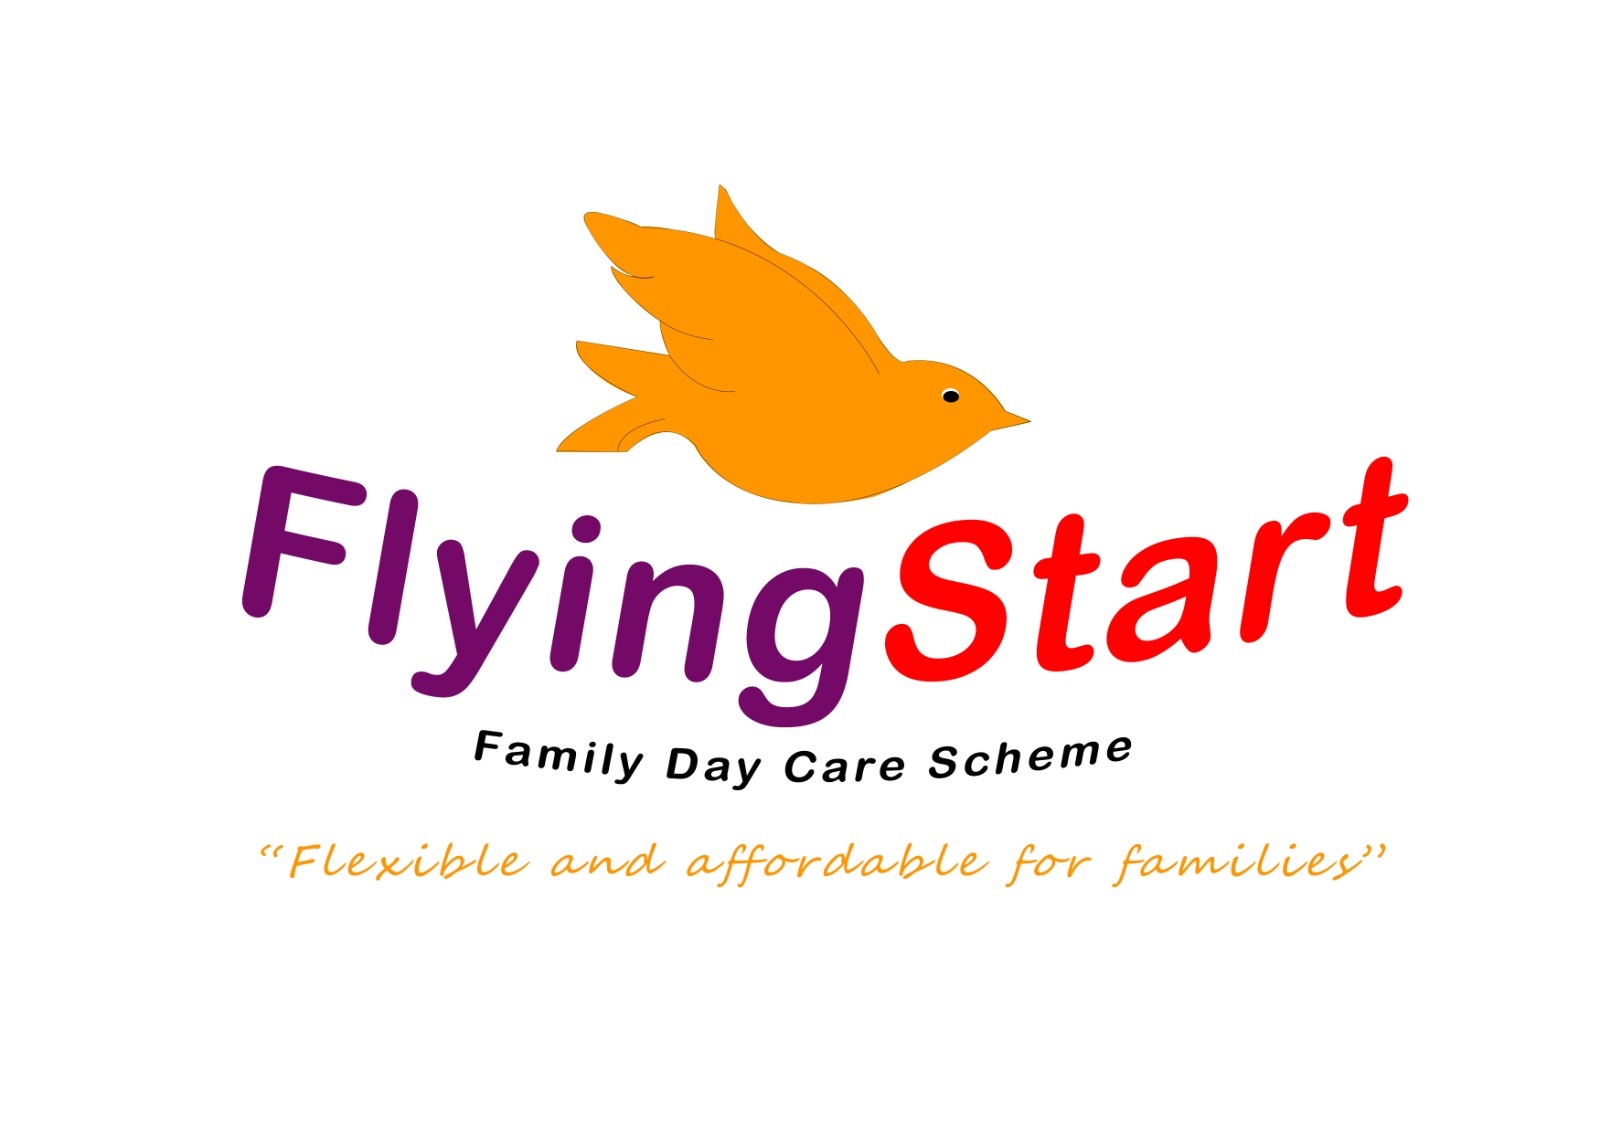 Flying Start Family Day Care Scheme logo